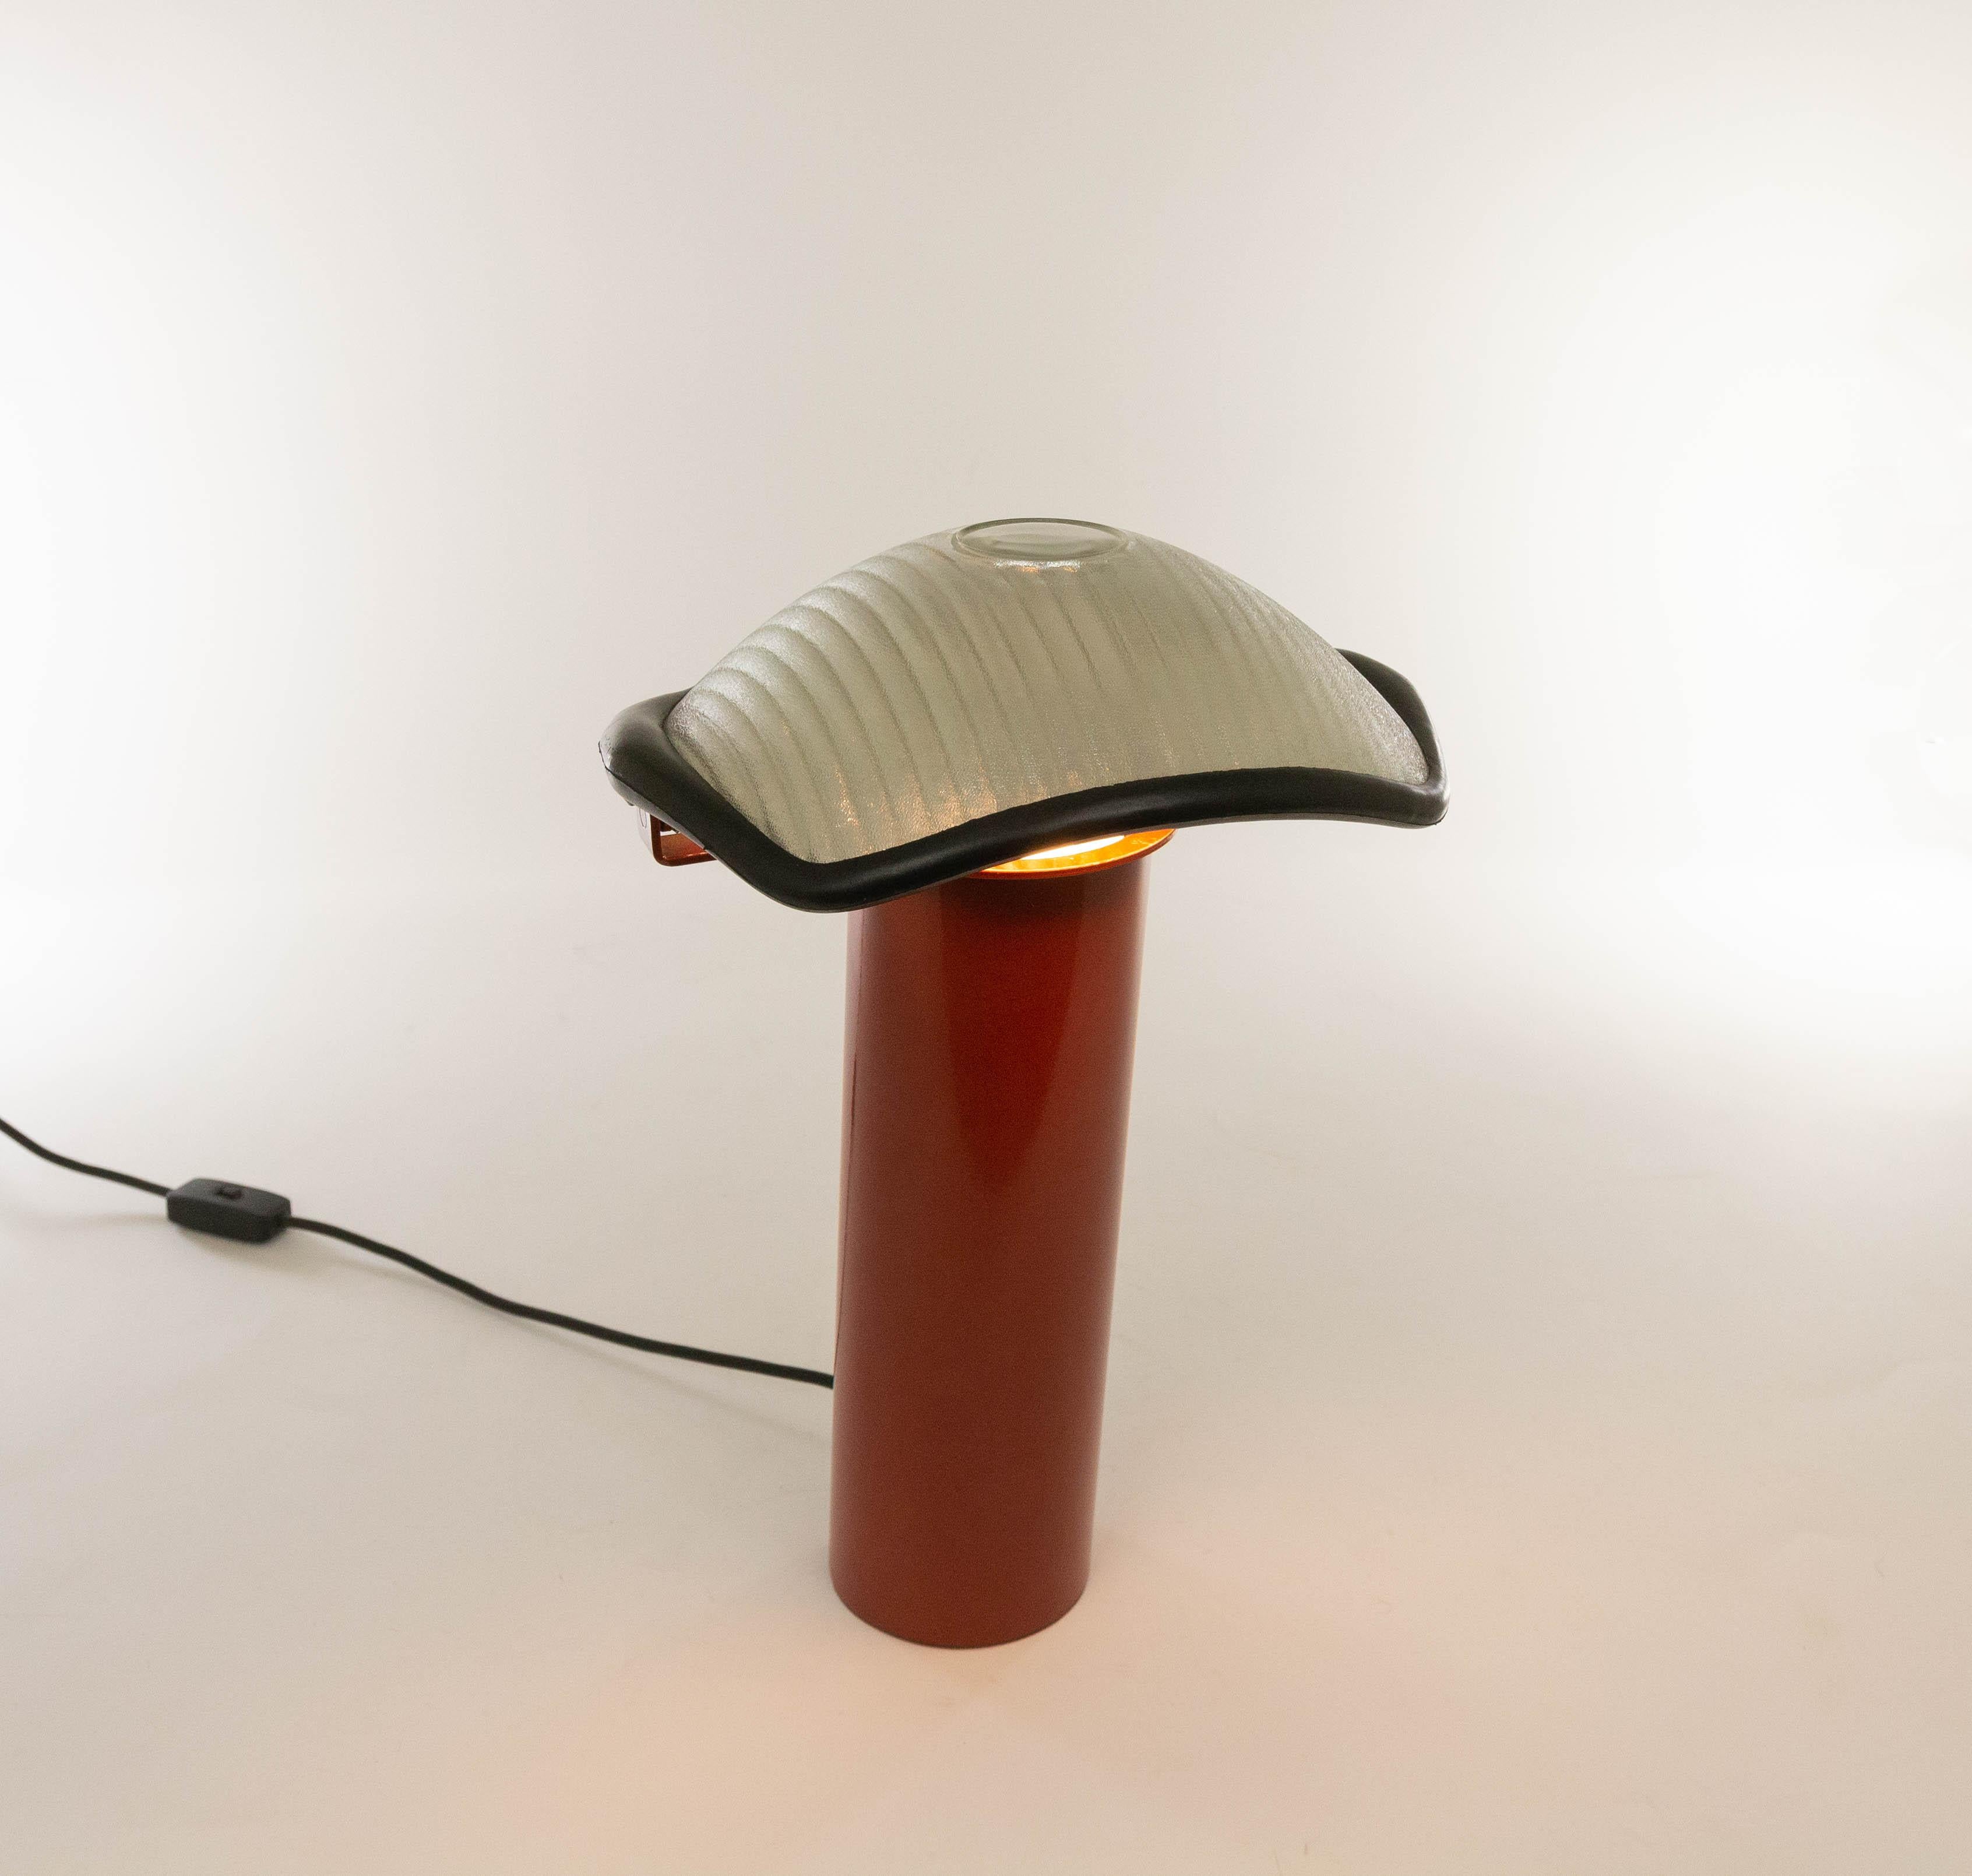 Une lampe de table exceptionnelle modèle Brontes, conçue par Cini Boeri et produite par Artemide, 1981.

Le modèle se compose d'une lourde base cylindrique en métal laqué rouge et d'un abat-jour pivotant avec un rebord en caoutchouc. L'abat-jour en